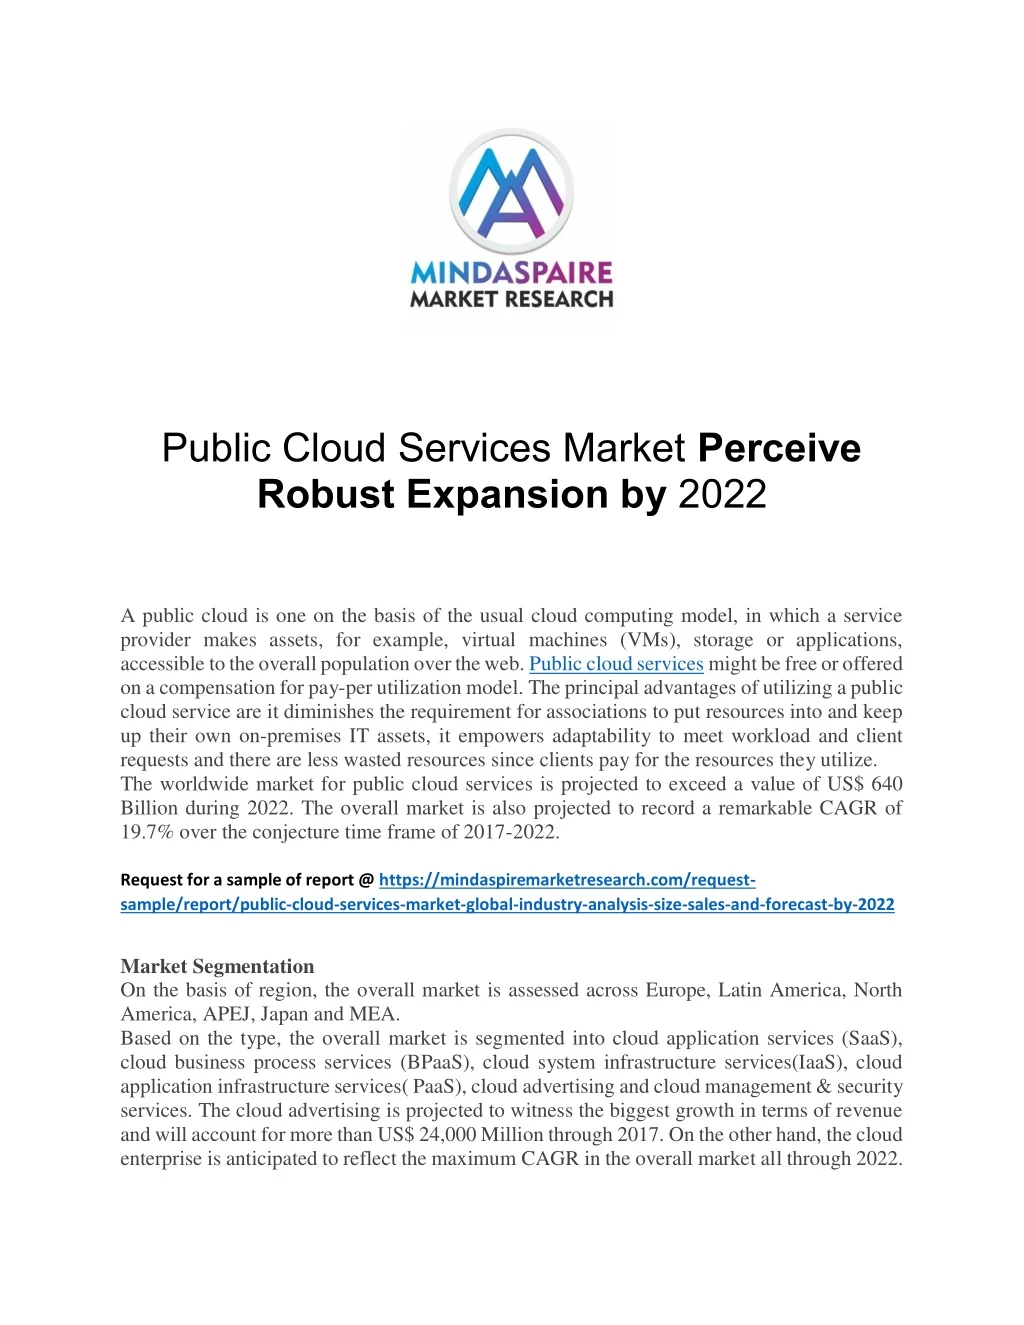 public cloud services market perceive robust